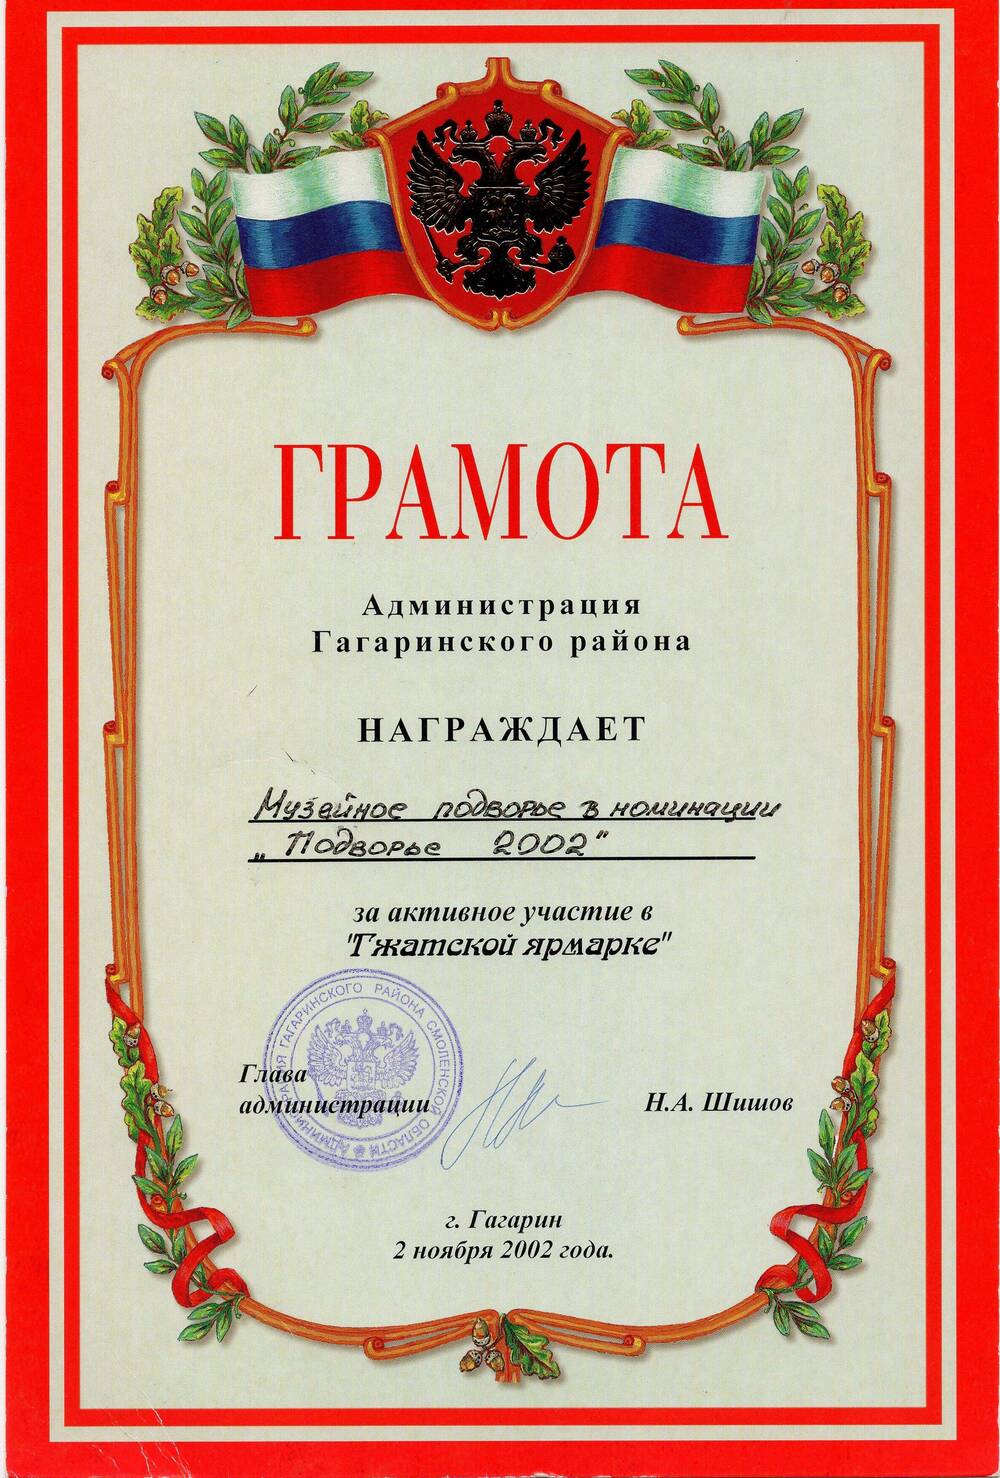 Грамота от Администрации Гагаринского района подворью Объединенного мемориального музея 
Ю.А. Гагарина за активное участие в Гжатской ярмарке (номинация Подворье 2002).